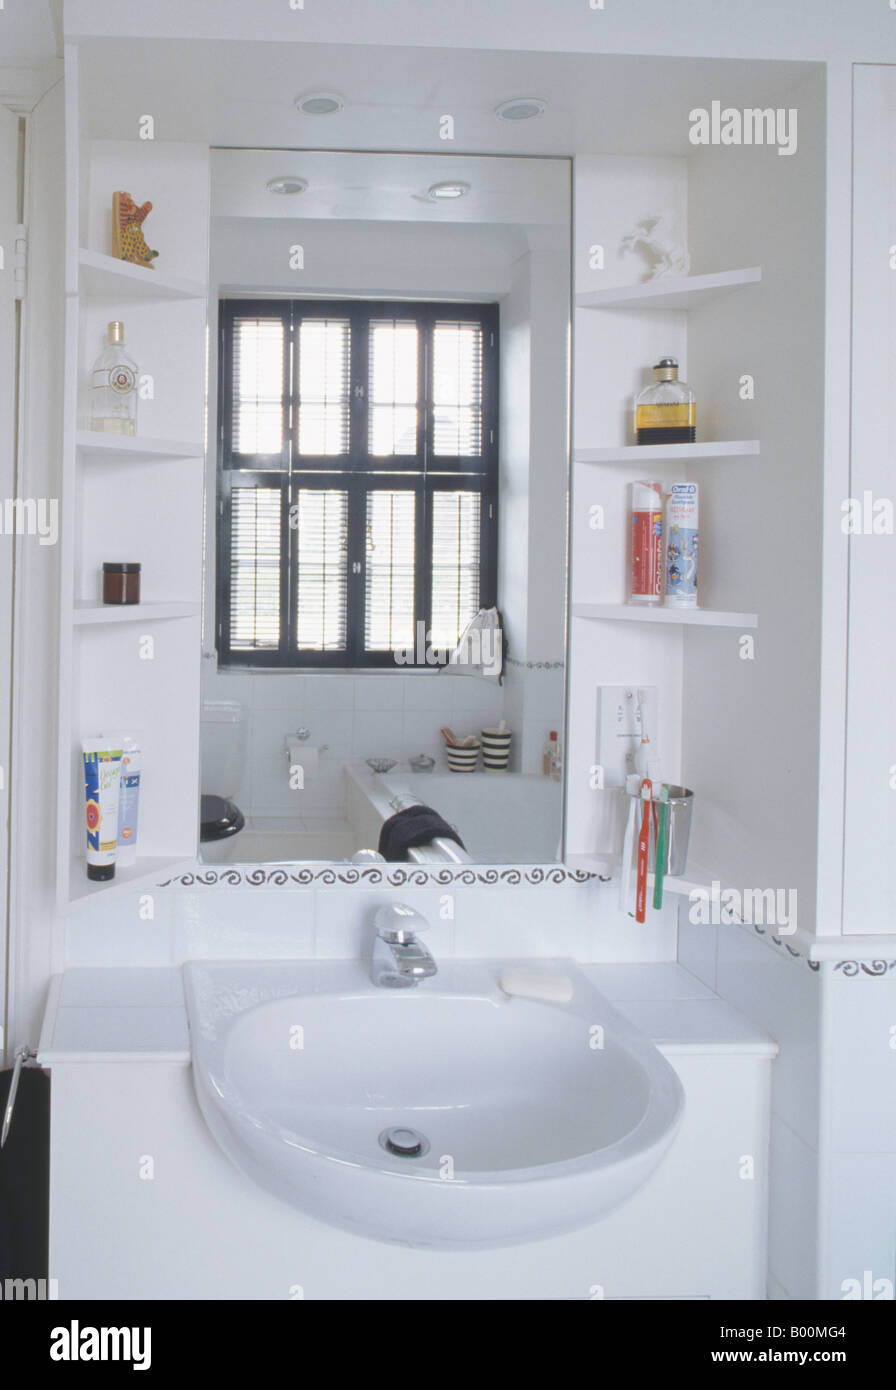 Cerca de estantes a cada lado del espejo sobre la cuenca del blanco en un  cuarto de baño moderno Fotografía de stock - Alamy